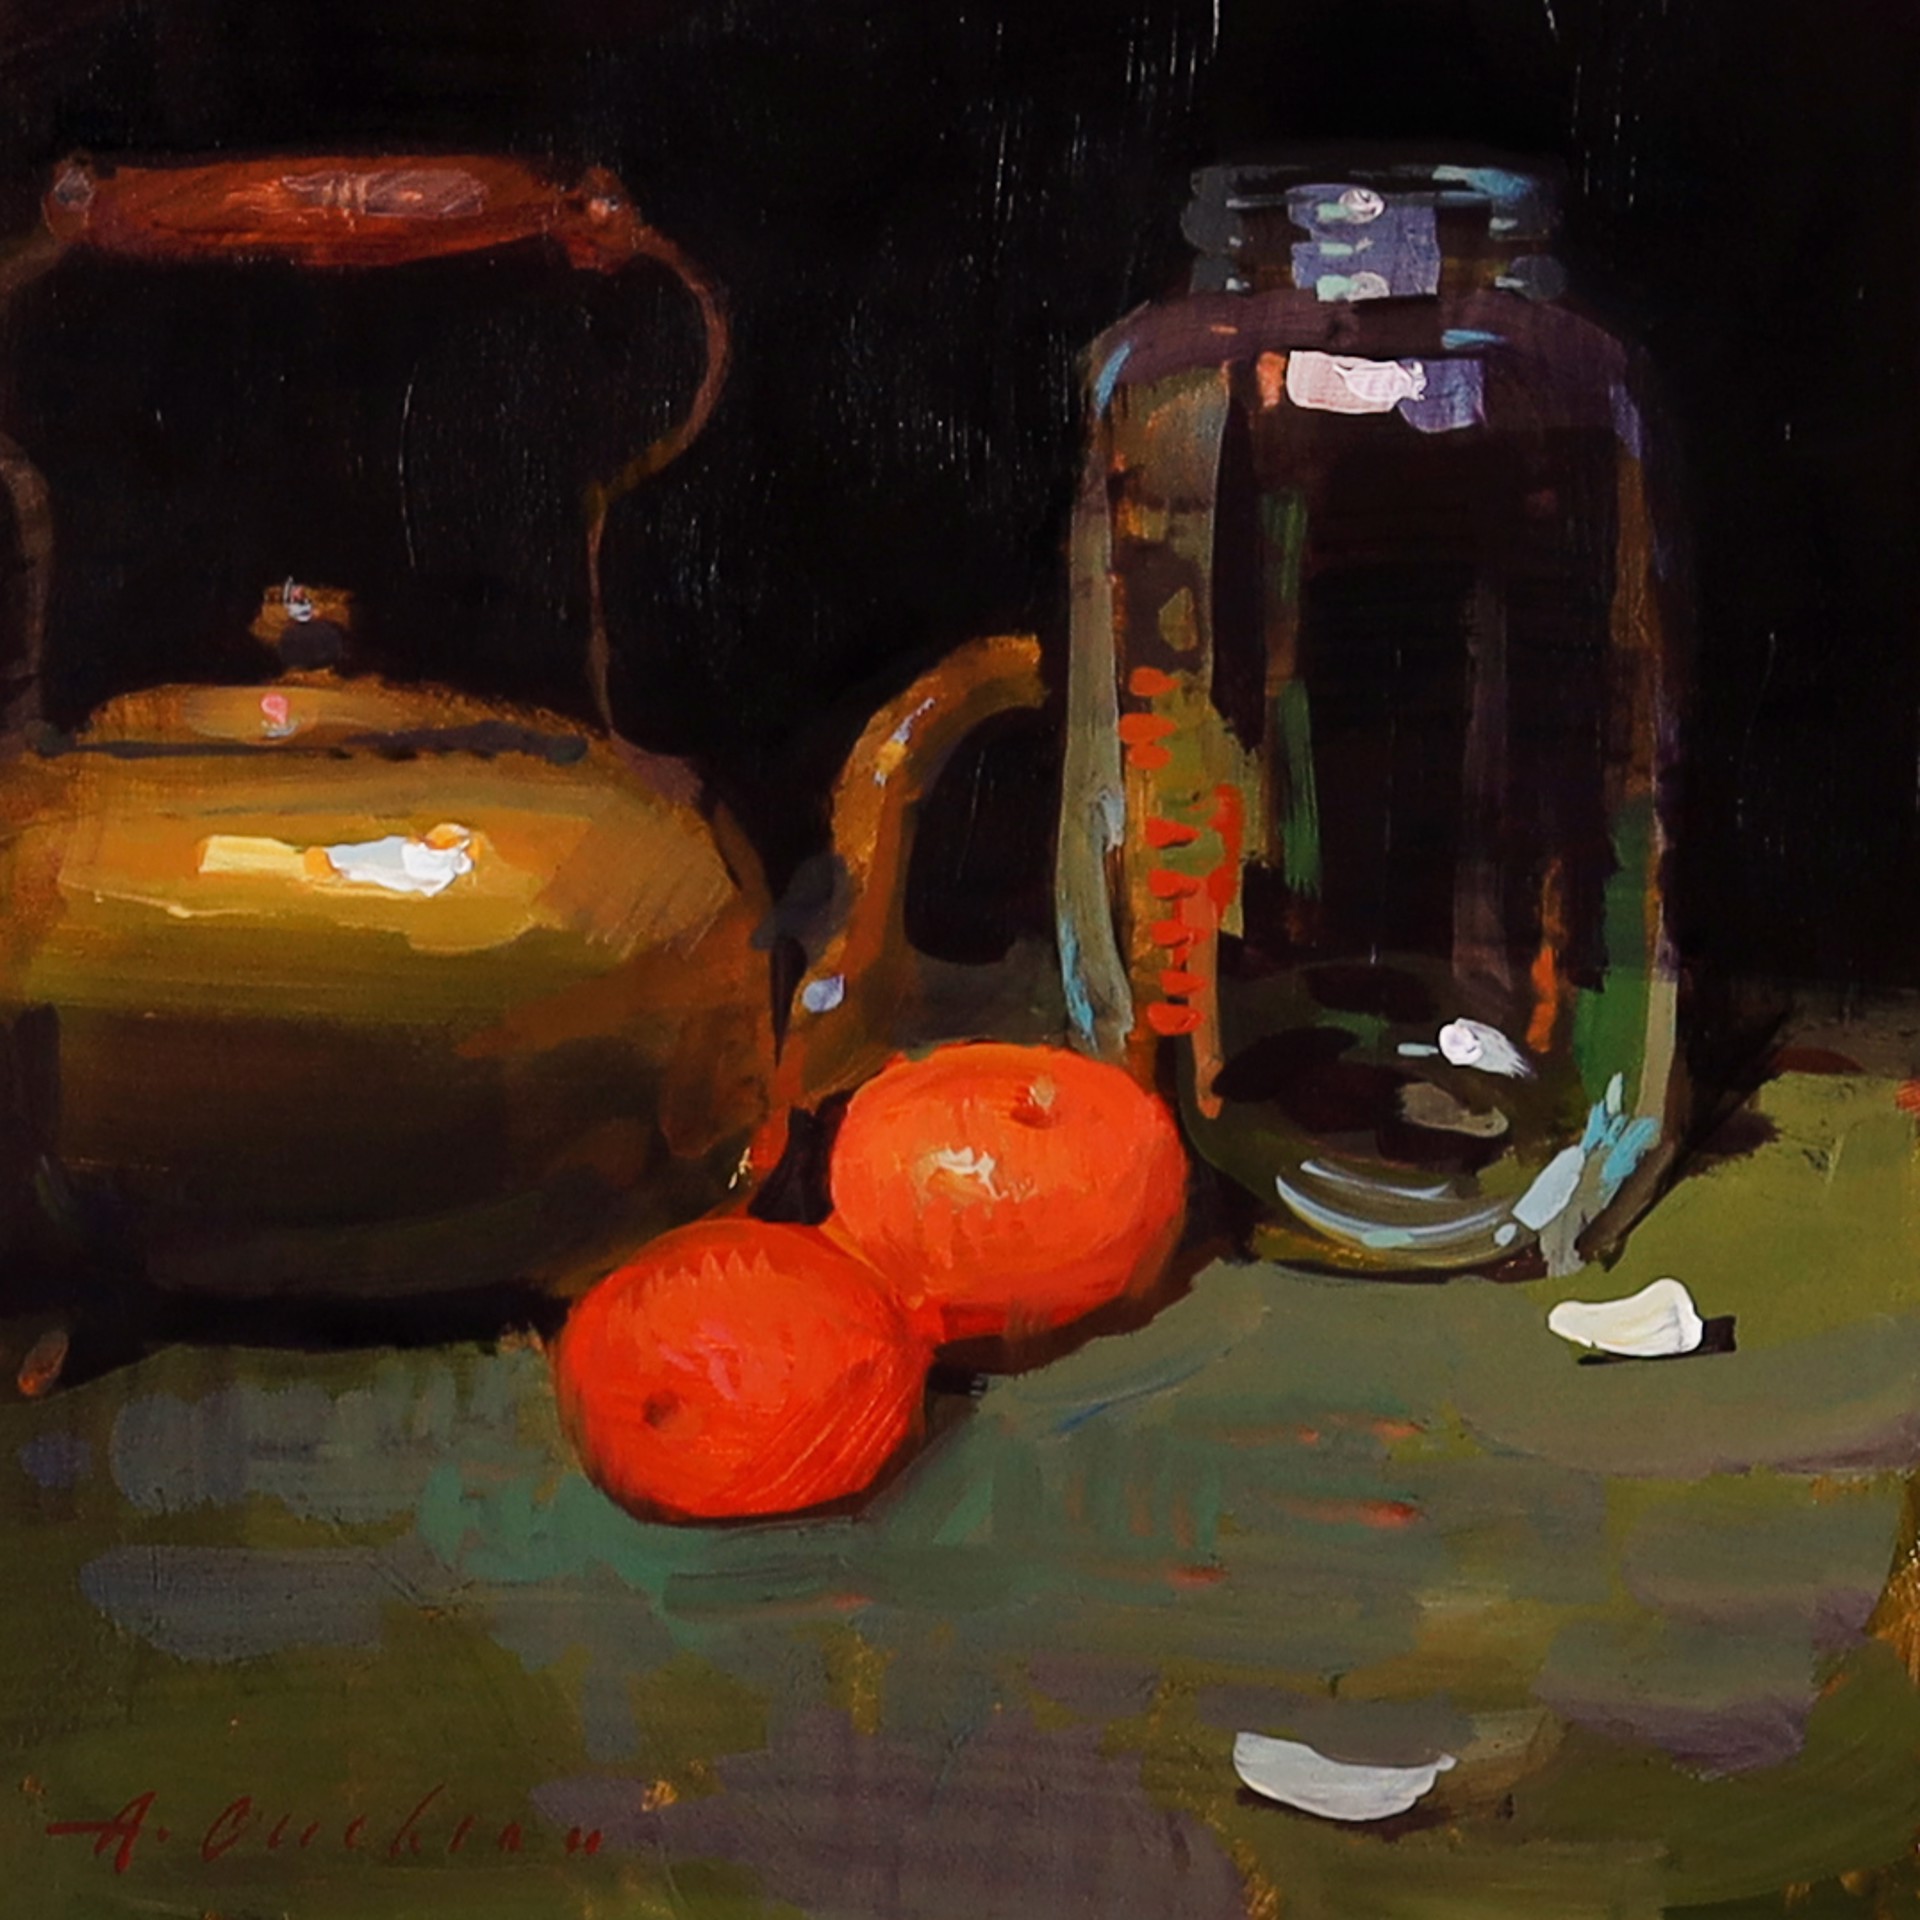 Kettle, Oranges, Glass Jar by Aimee Erickson, PAPA & OPA